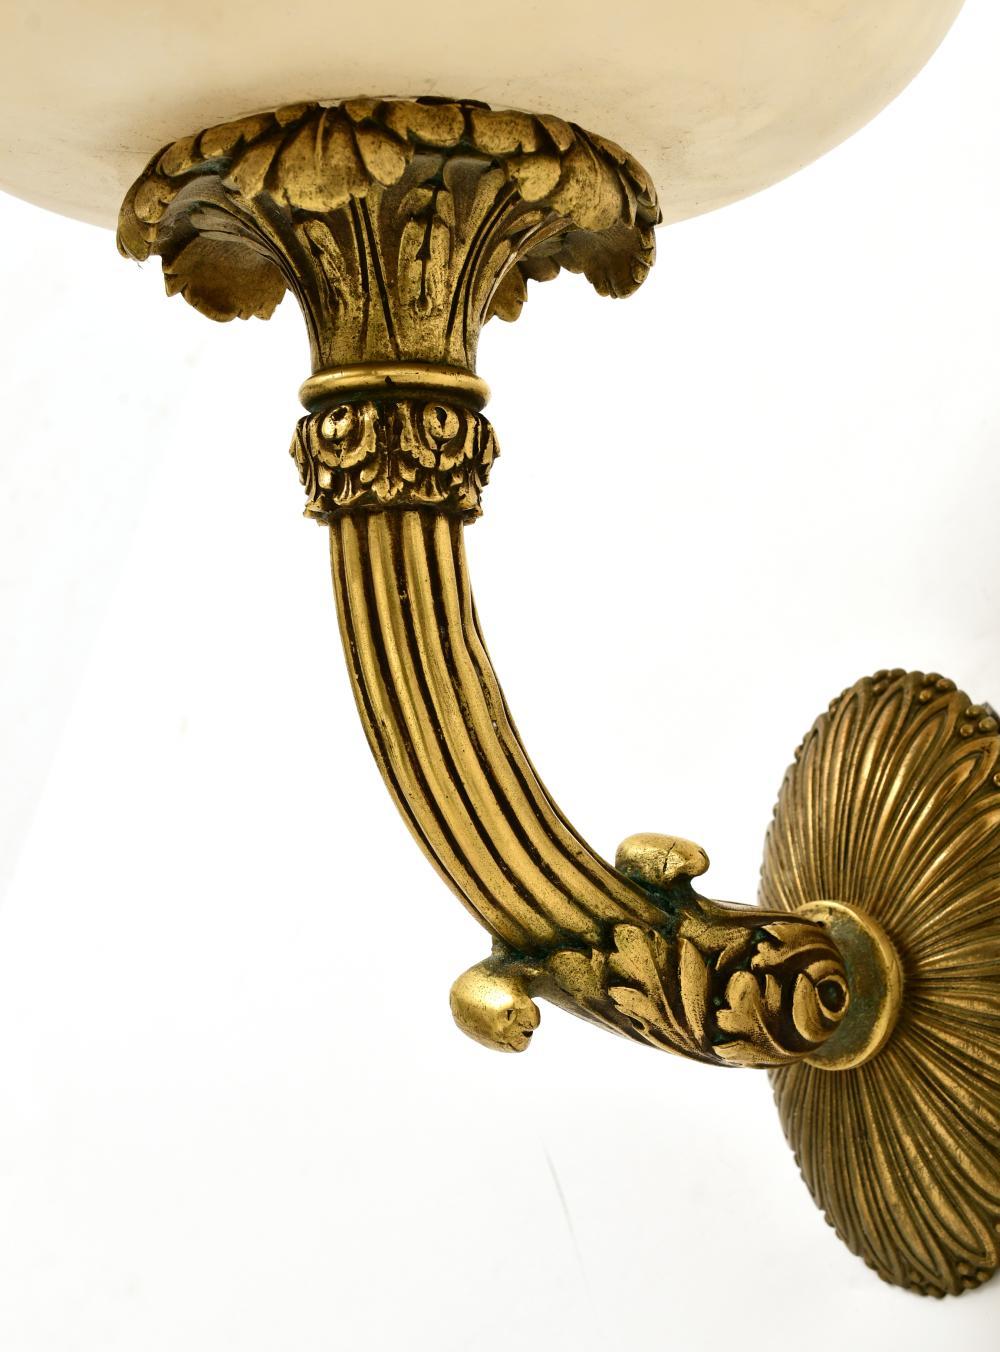 Ein Paar Caldwell-Wandleuchter aus Alabaster im Louis-XVI-Stil. Die geschwungenen Arme sind fein ziseliert und tragen die typische Caldwell-Patina. Mit ovalen Rückenschildern mit Blattspitzendetails und originalen übergroßen Alabasterschirmen.